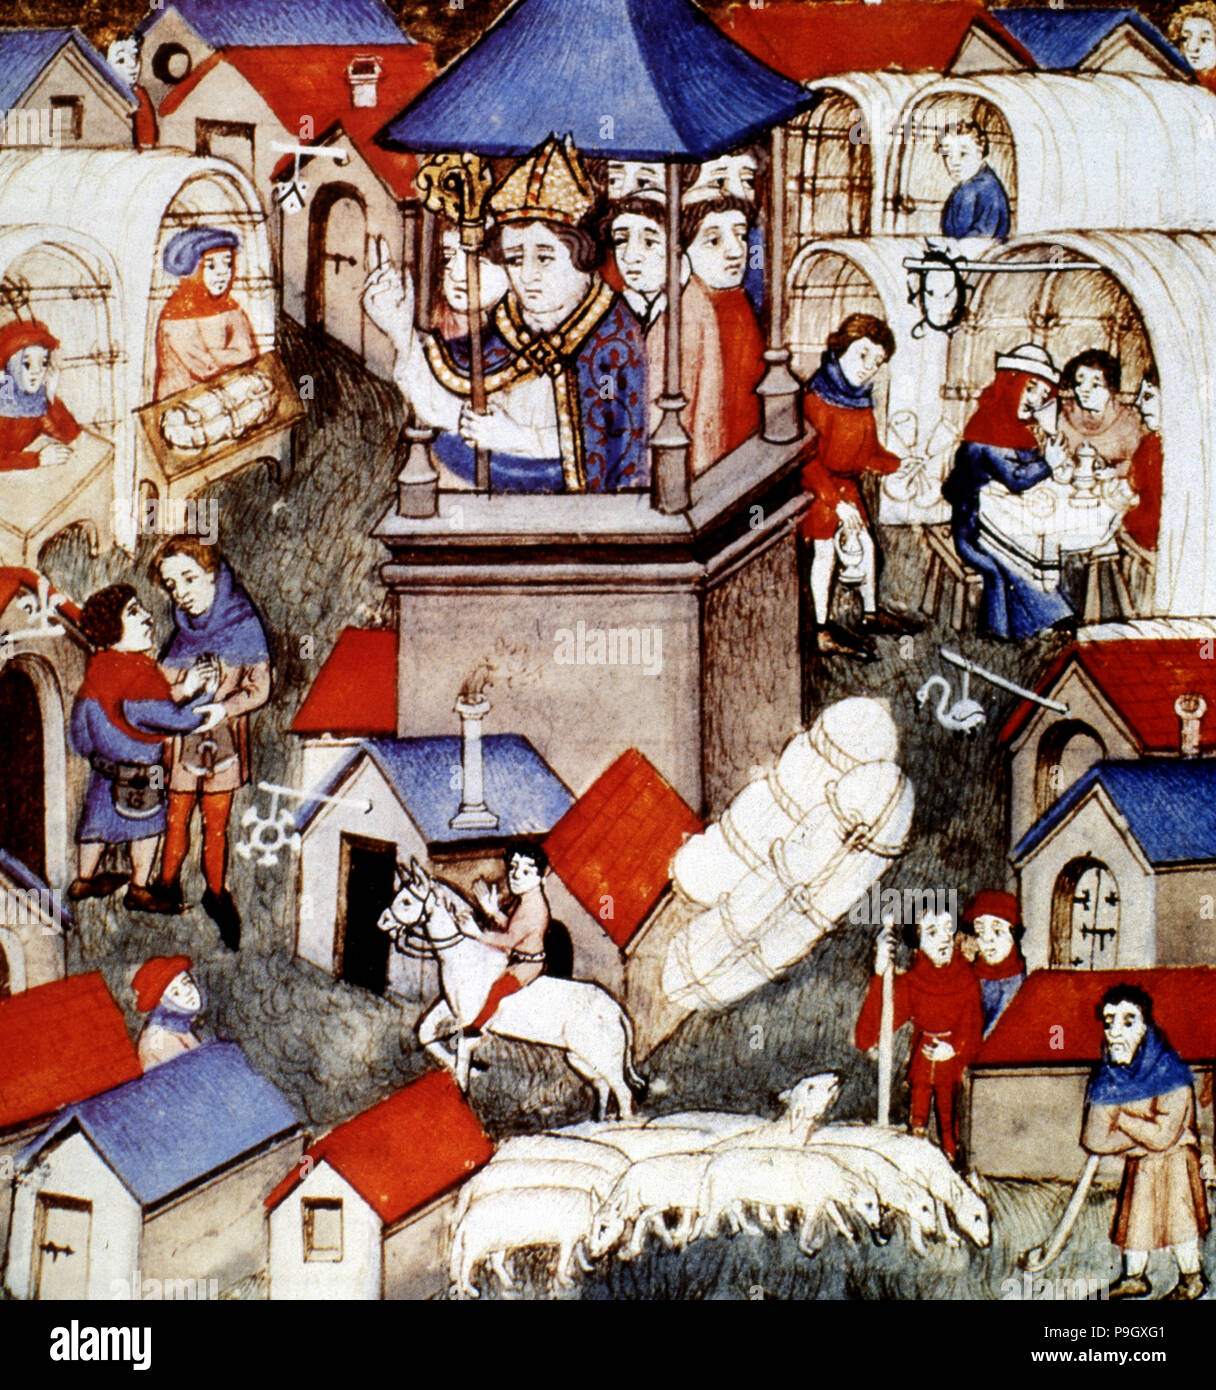 Segen der Messe von Saint-Denis in Paris, 14. Jahrhundert Miniatur. Stockfoto